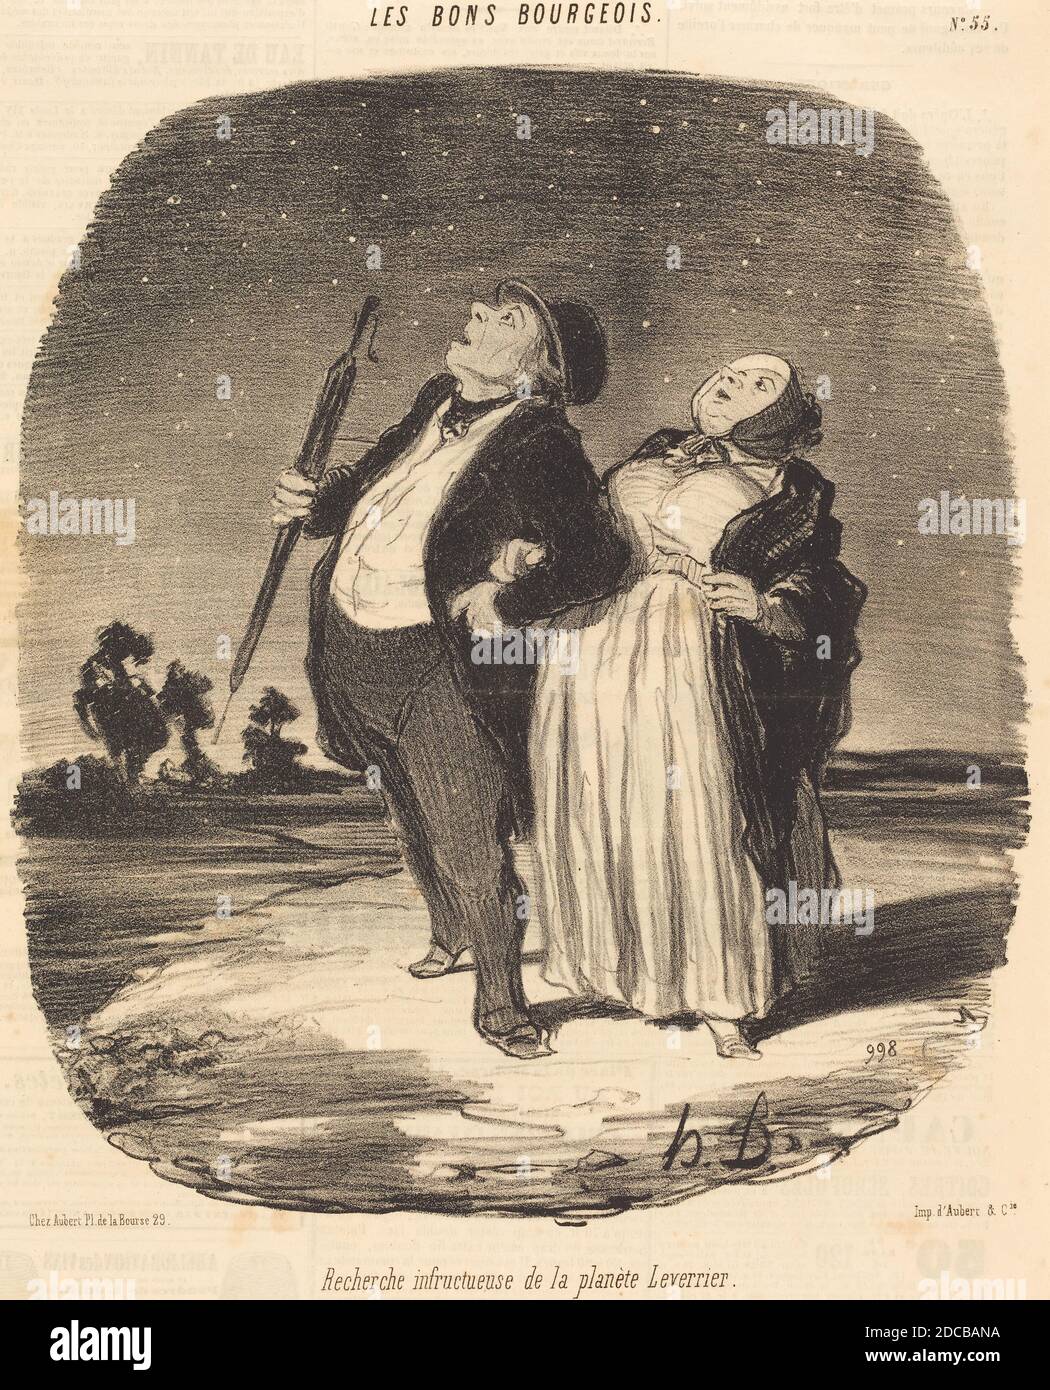 Honoré Daumier, (artist), French, 1808 - 1879, Recherche infructueuse de la planète Leverrier, Les Bons bourgeois: pl.55, (series), 1846, lithograph on newsprint Stock Photo